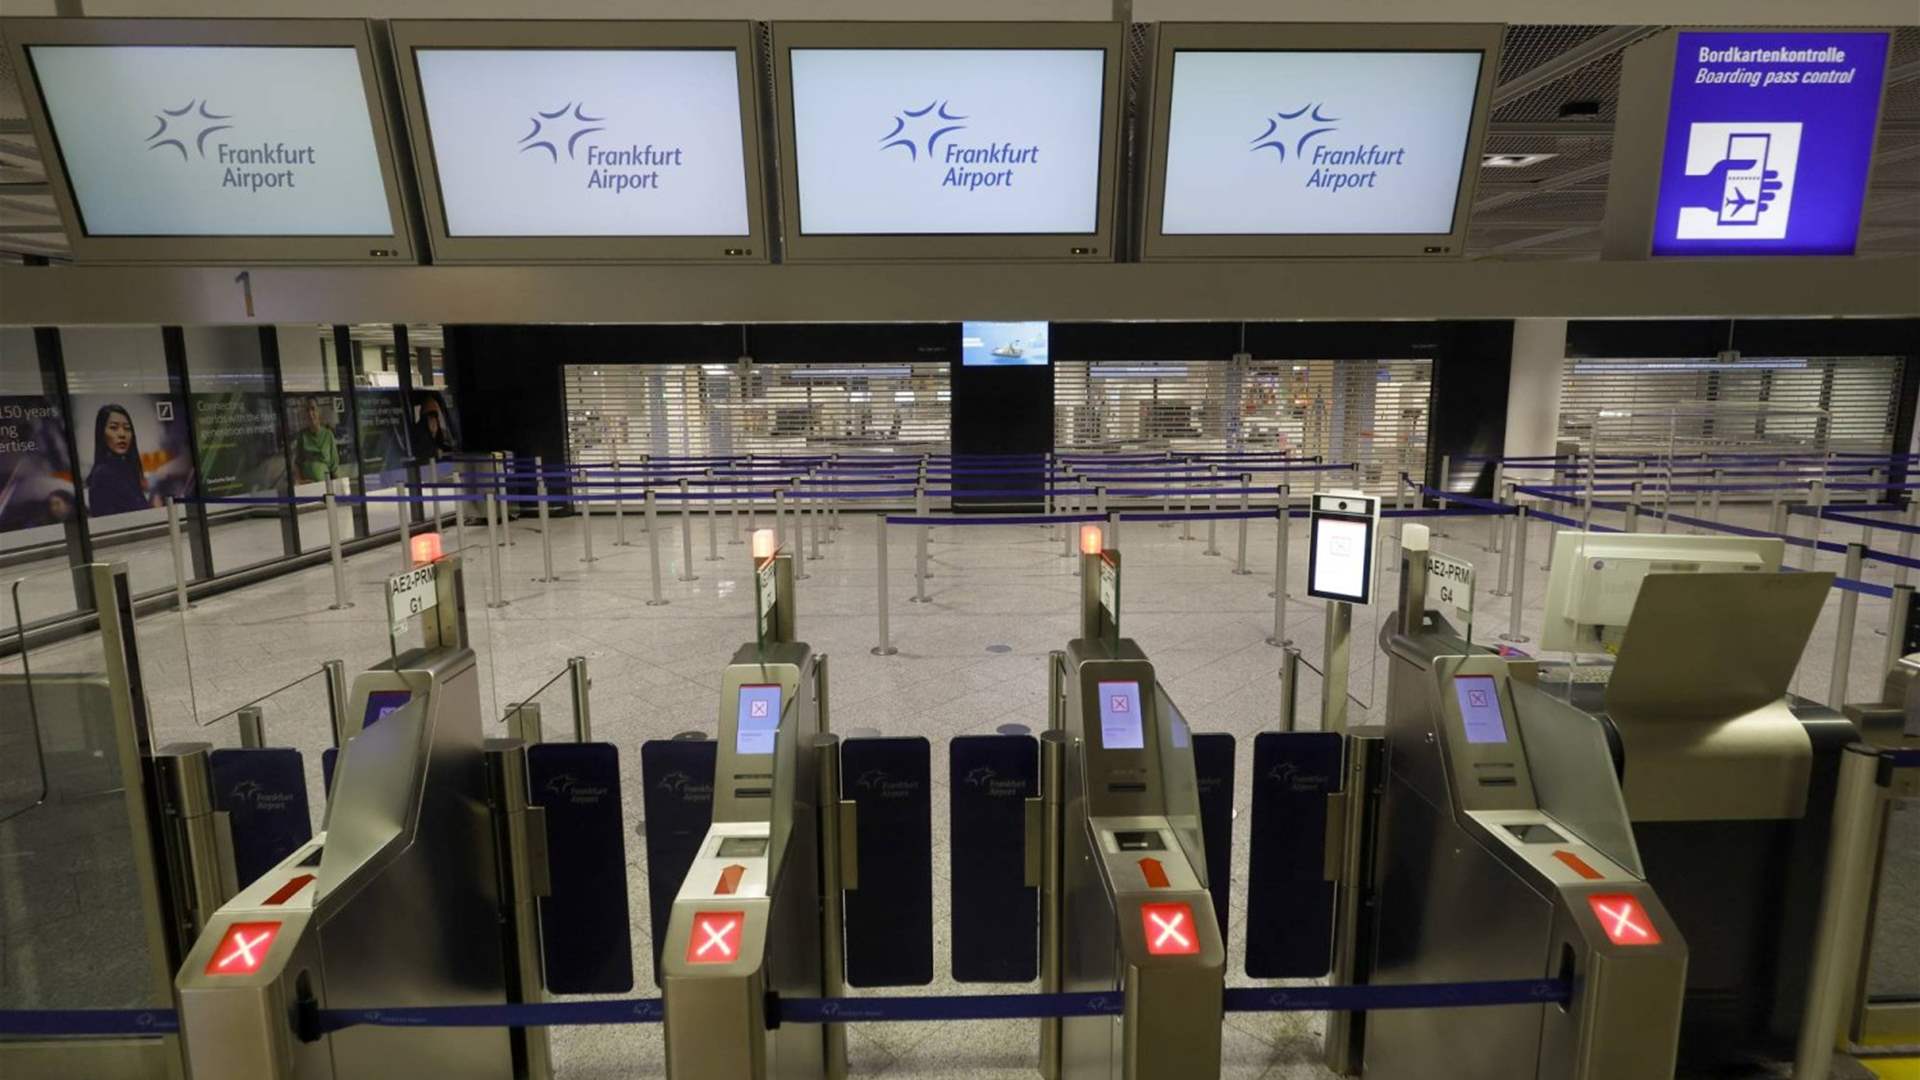 إضراب لموظفي الأمن في 11 مطارًا في ألمانيا وإلغاء 1100 رحلة على الأقلّ